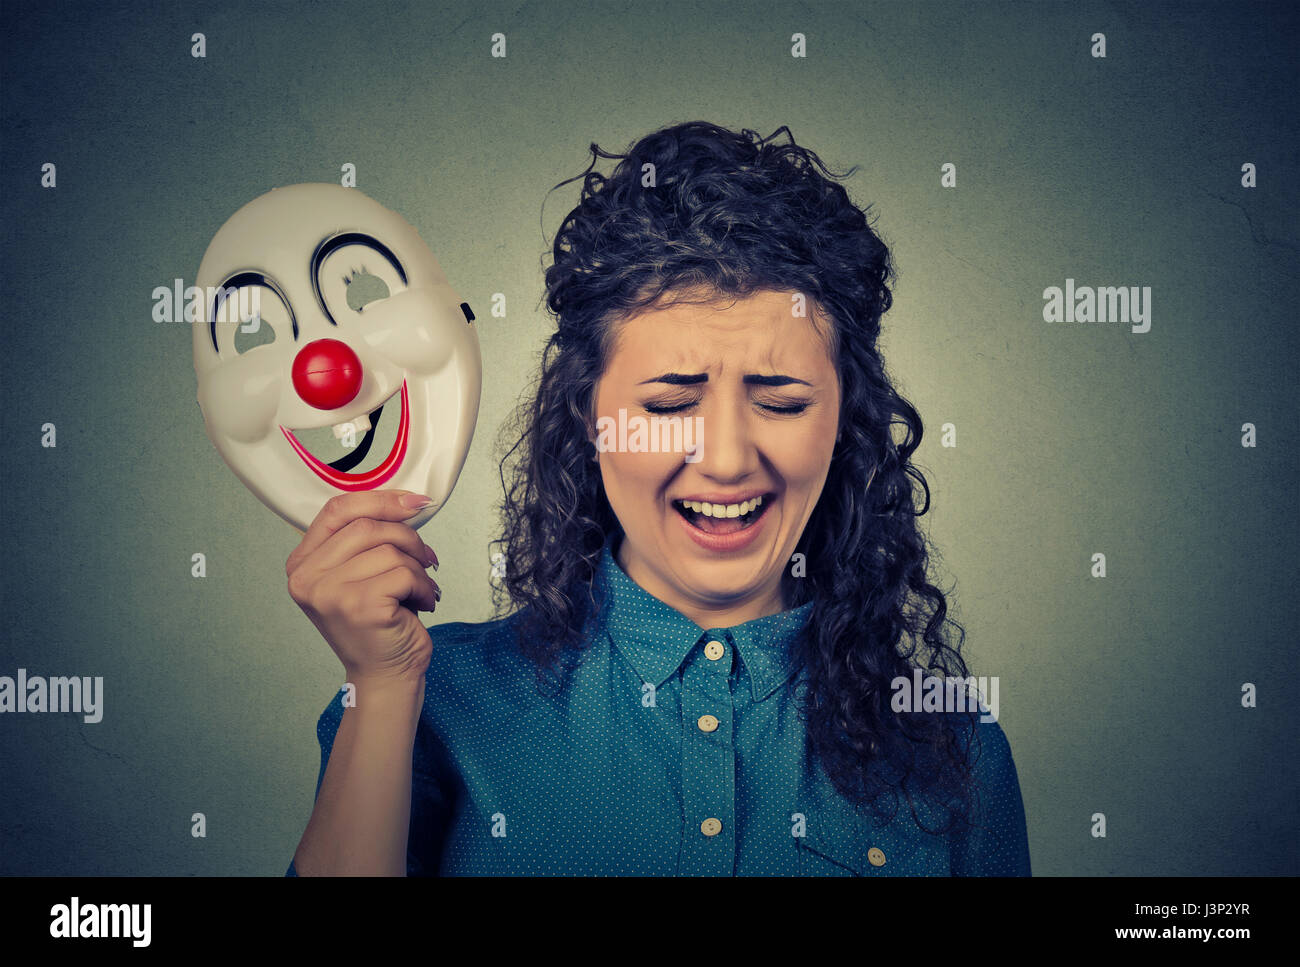 Porträt-junge verärgert weinende schreiende Frau hält eine Clownsmaske mit dem Ausdruck ihrer Fröhlichkeit Glück auf graue Wand Hintergrund isoliert. Menschliche Gefühle Stockfoto